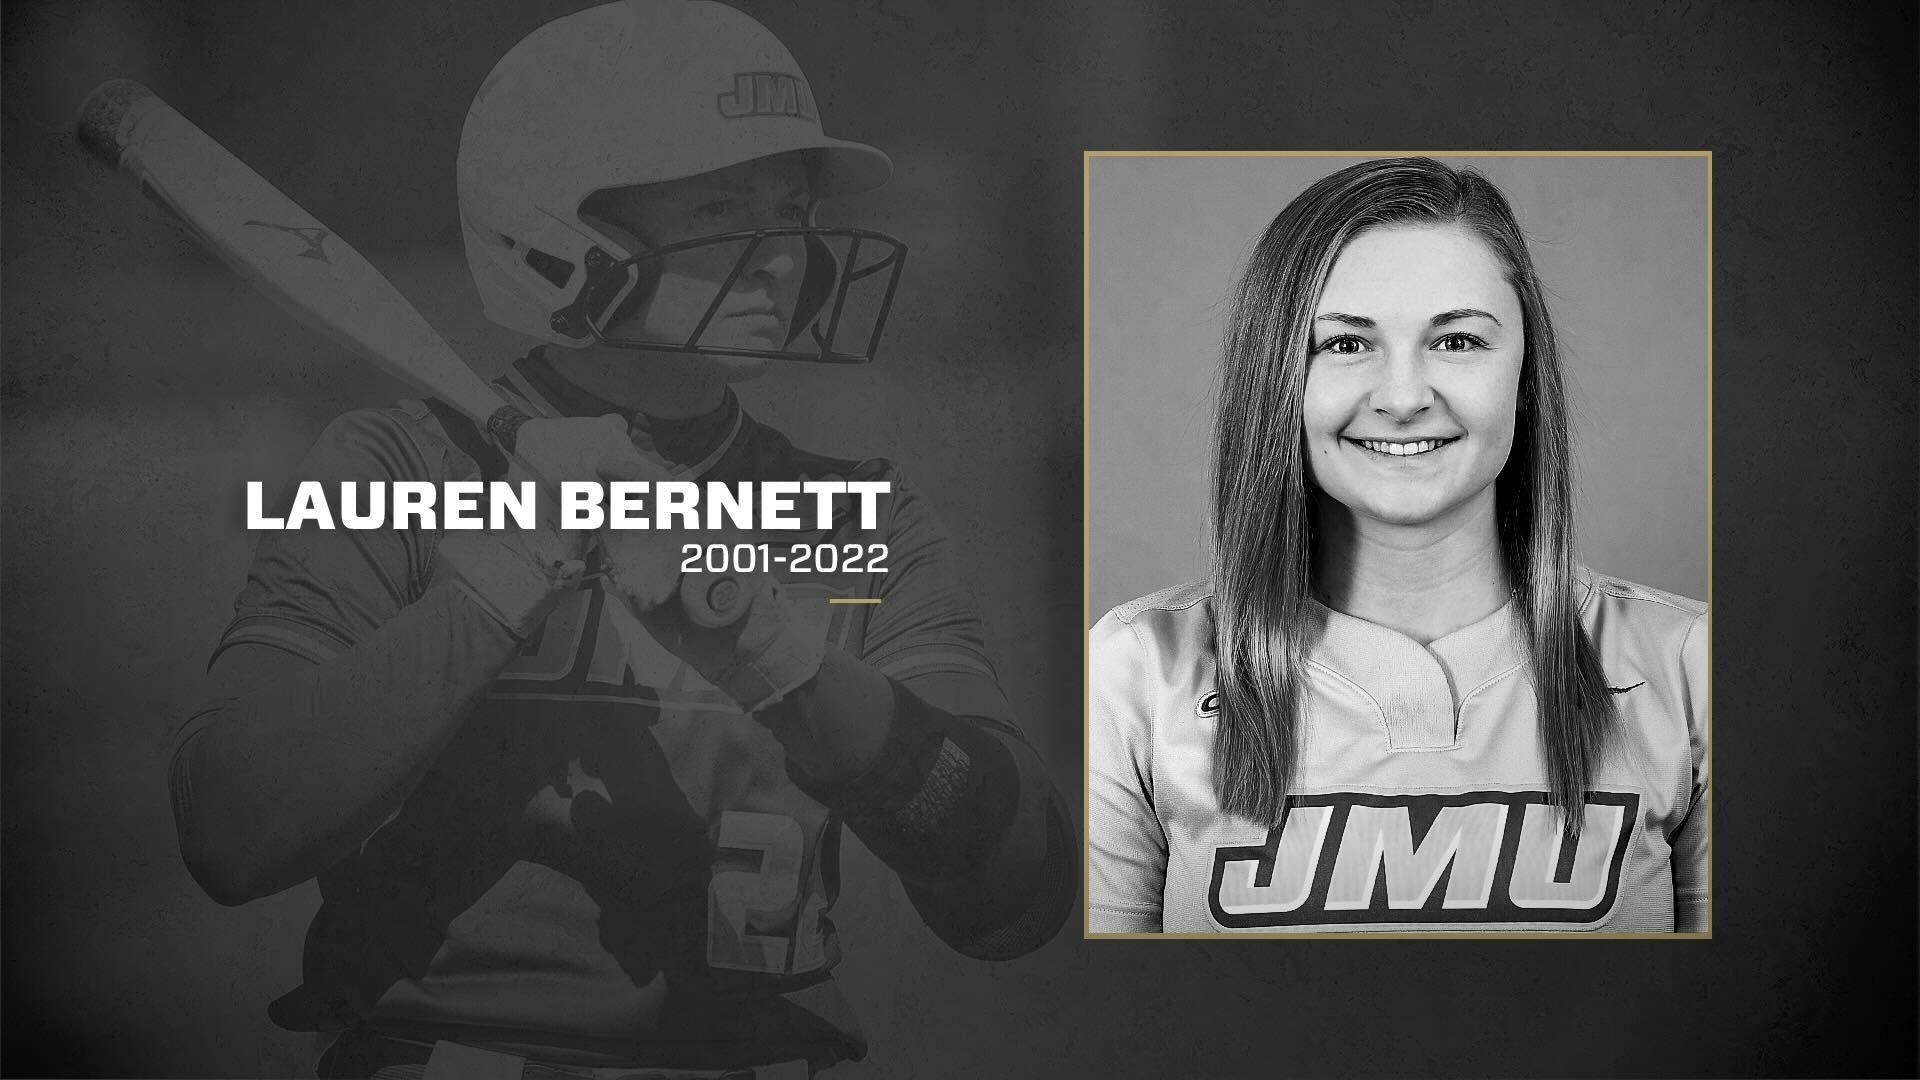 James Madison University softball star Lauren Bernett’s cause of death revealed